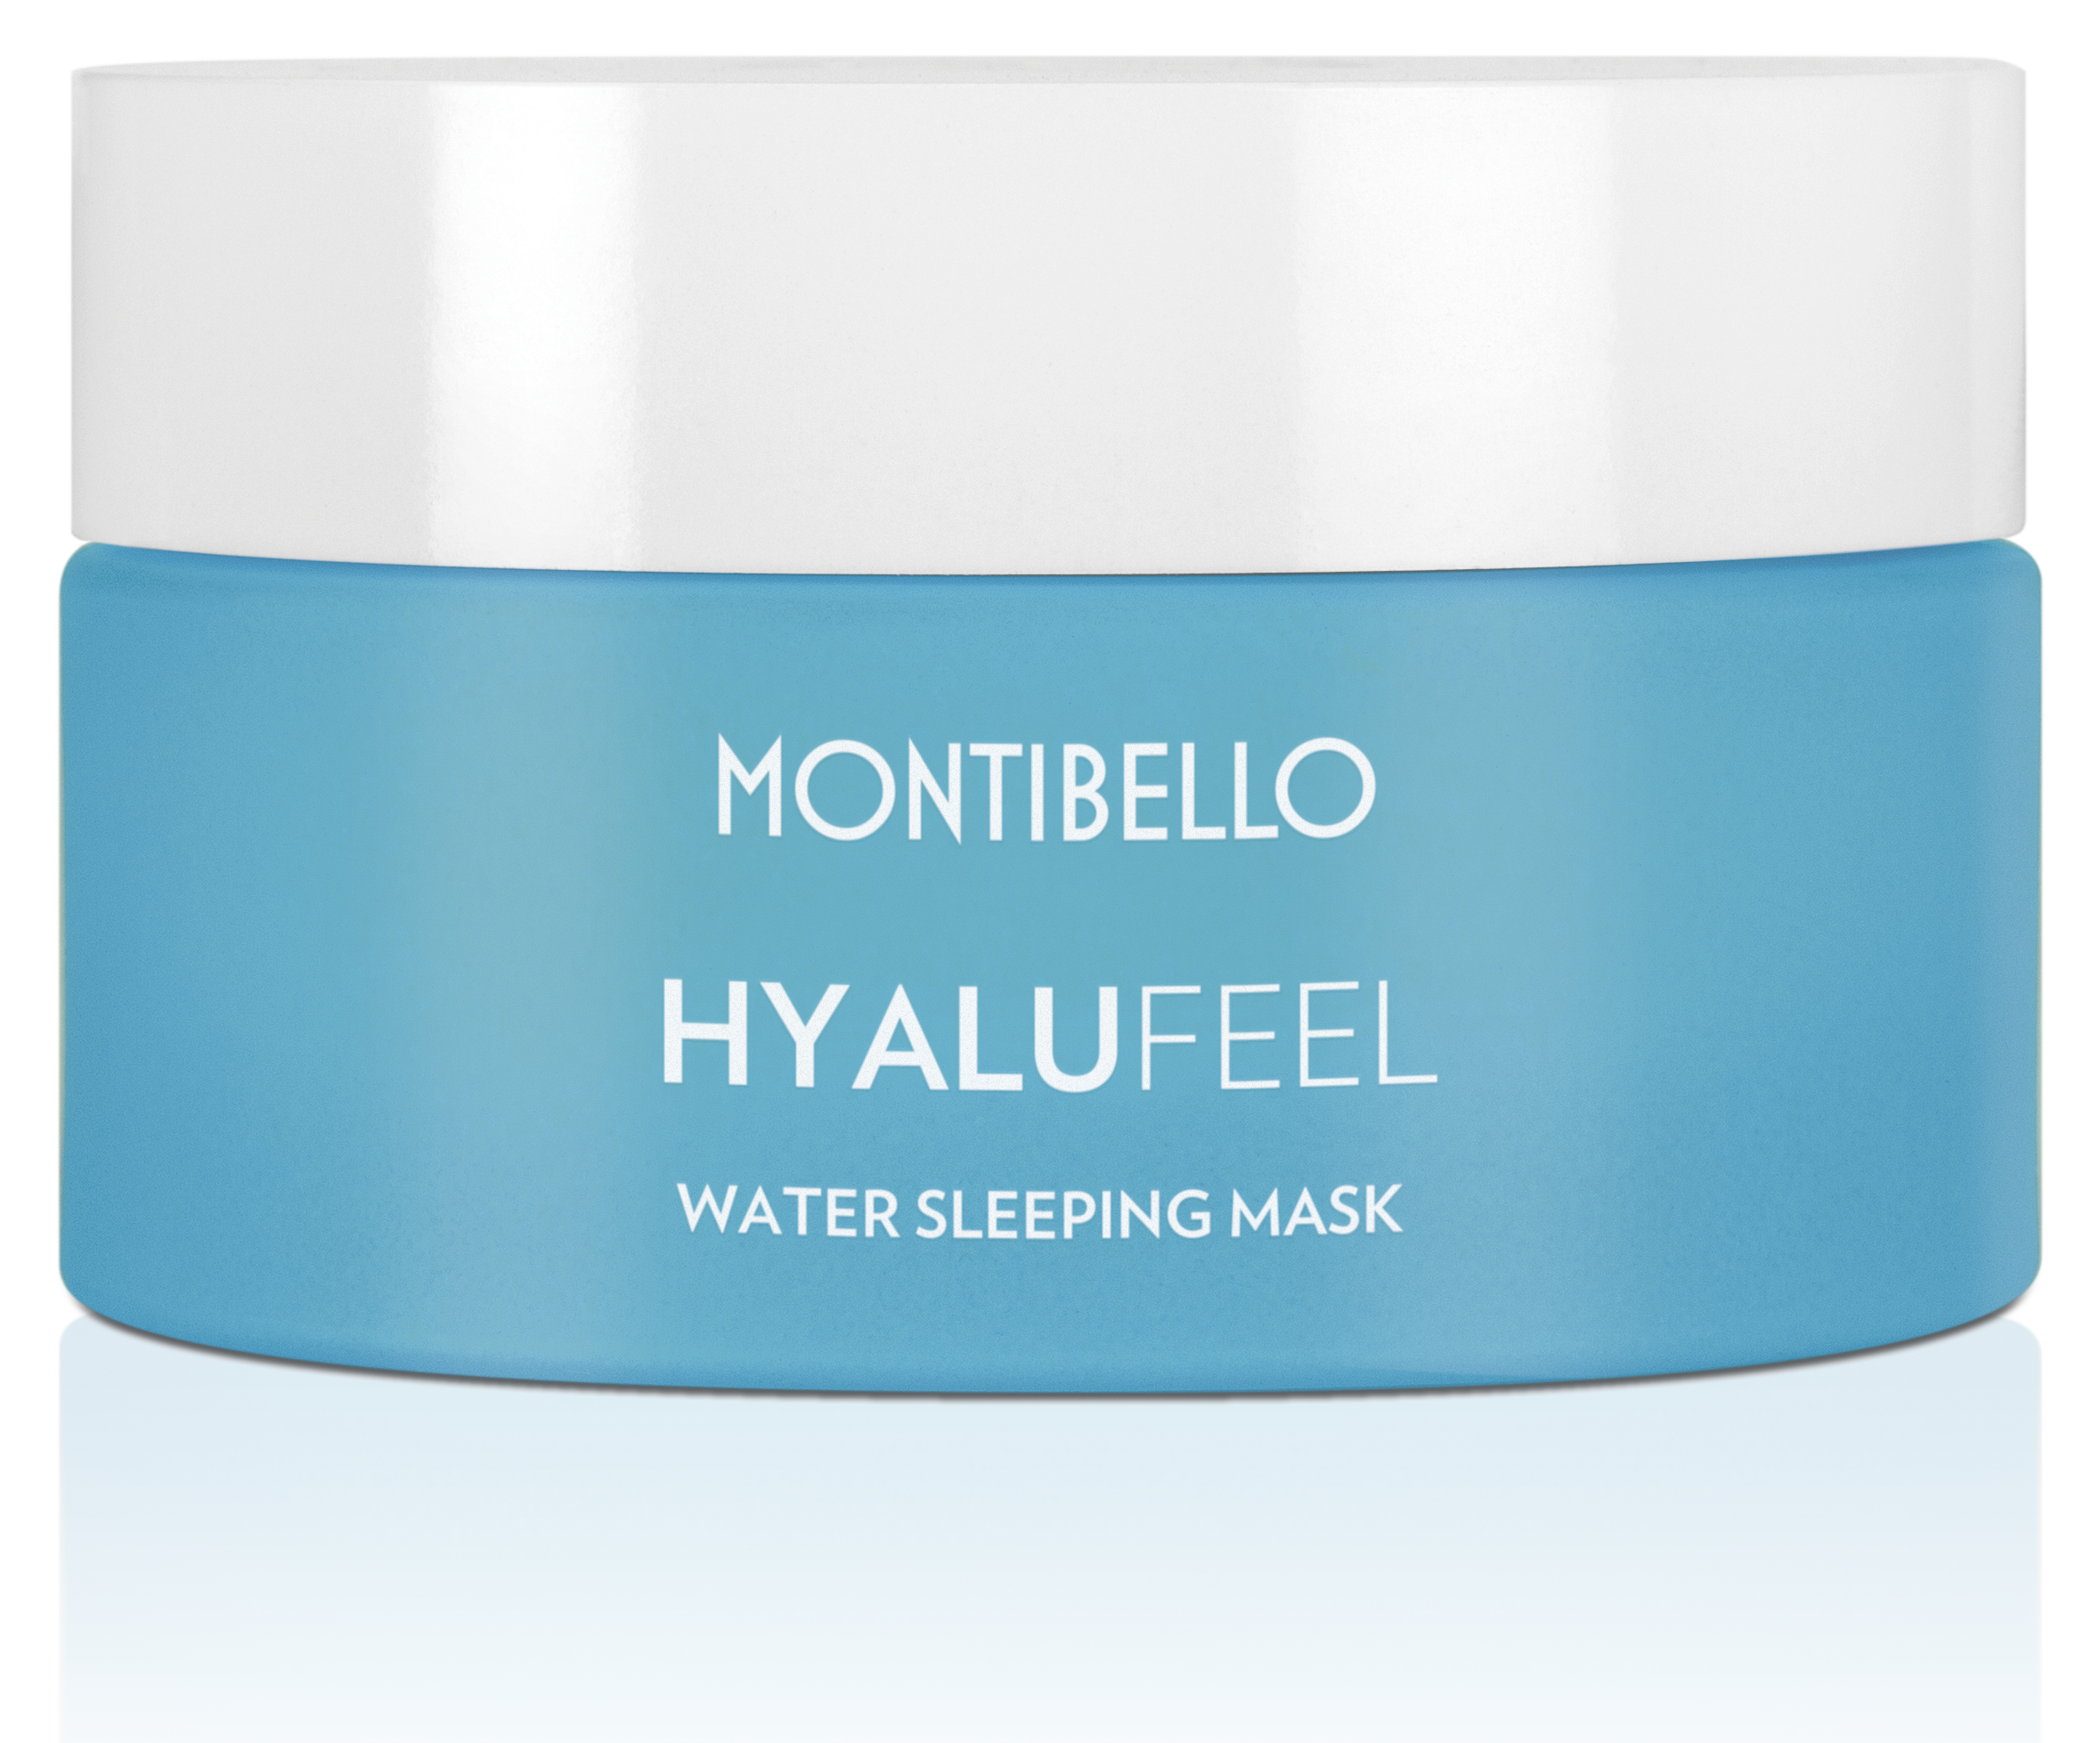 La importancia de hidratar la piel en otoño. Productos Montibello, Hidratar la piel en otoño, con Hyalufeel Daily Water Shot. 